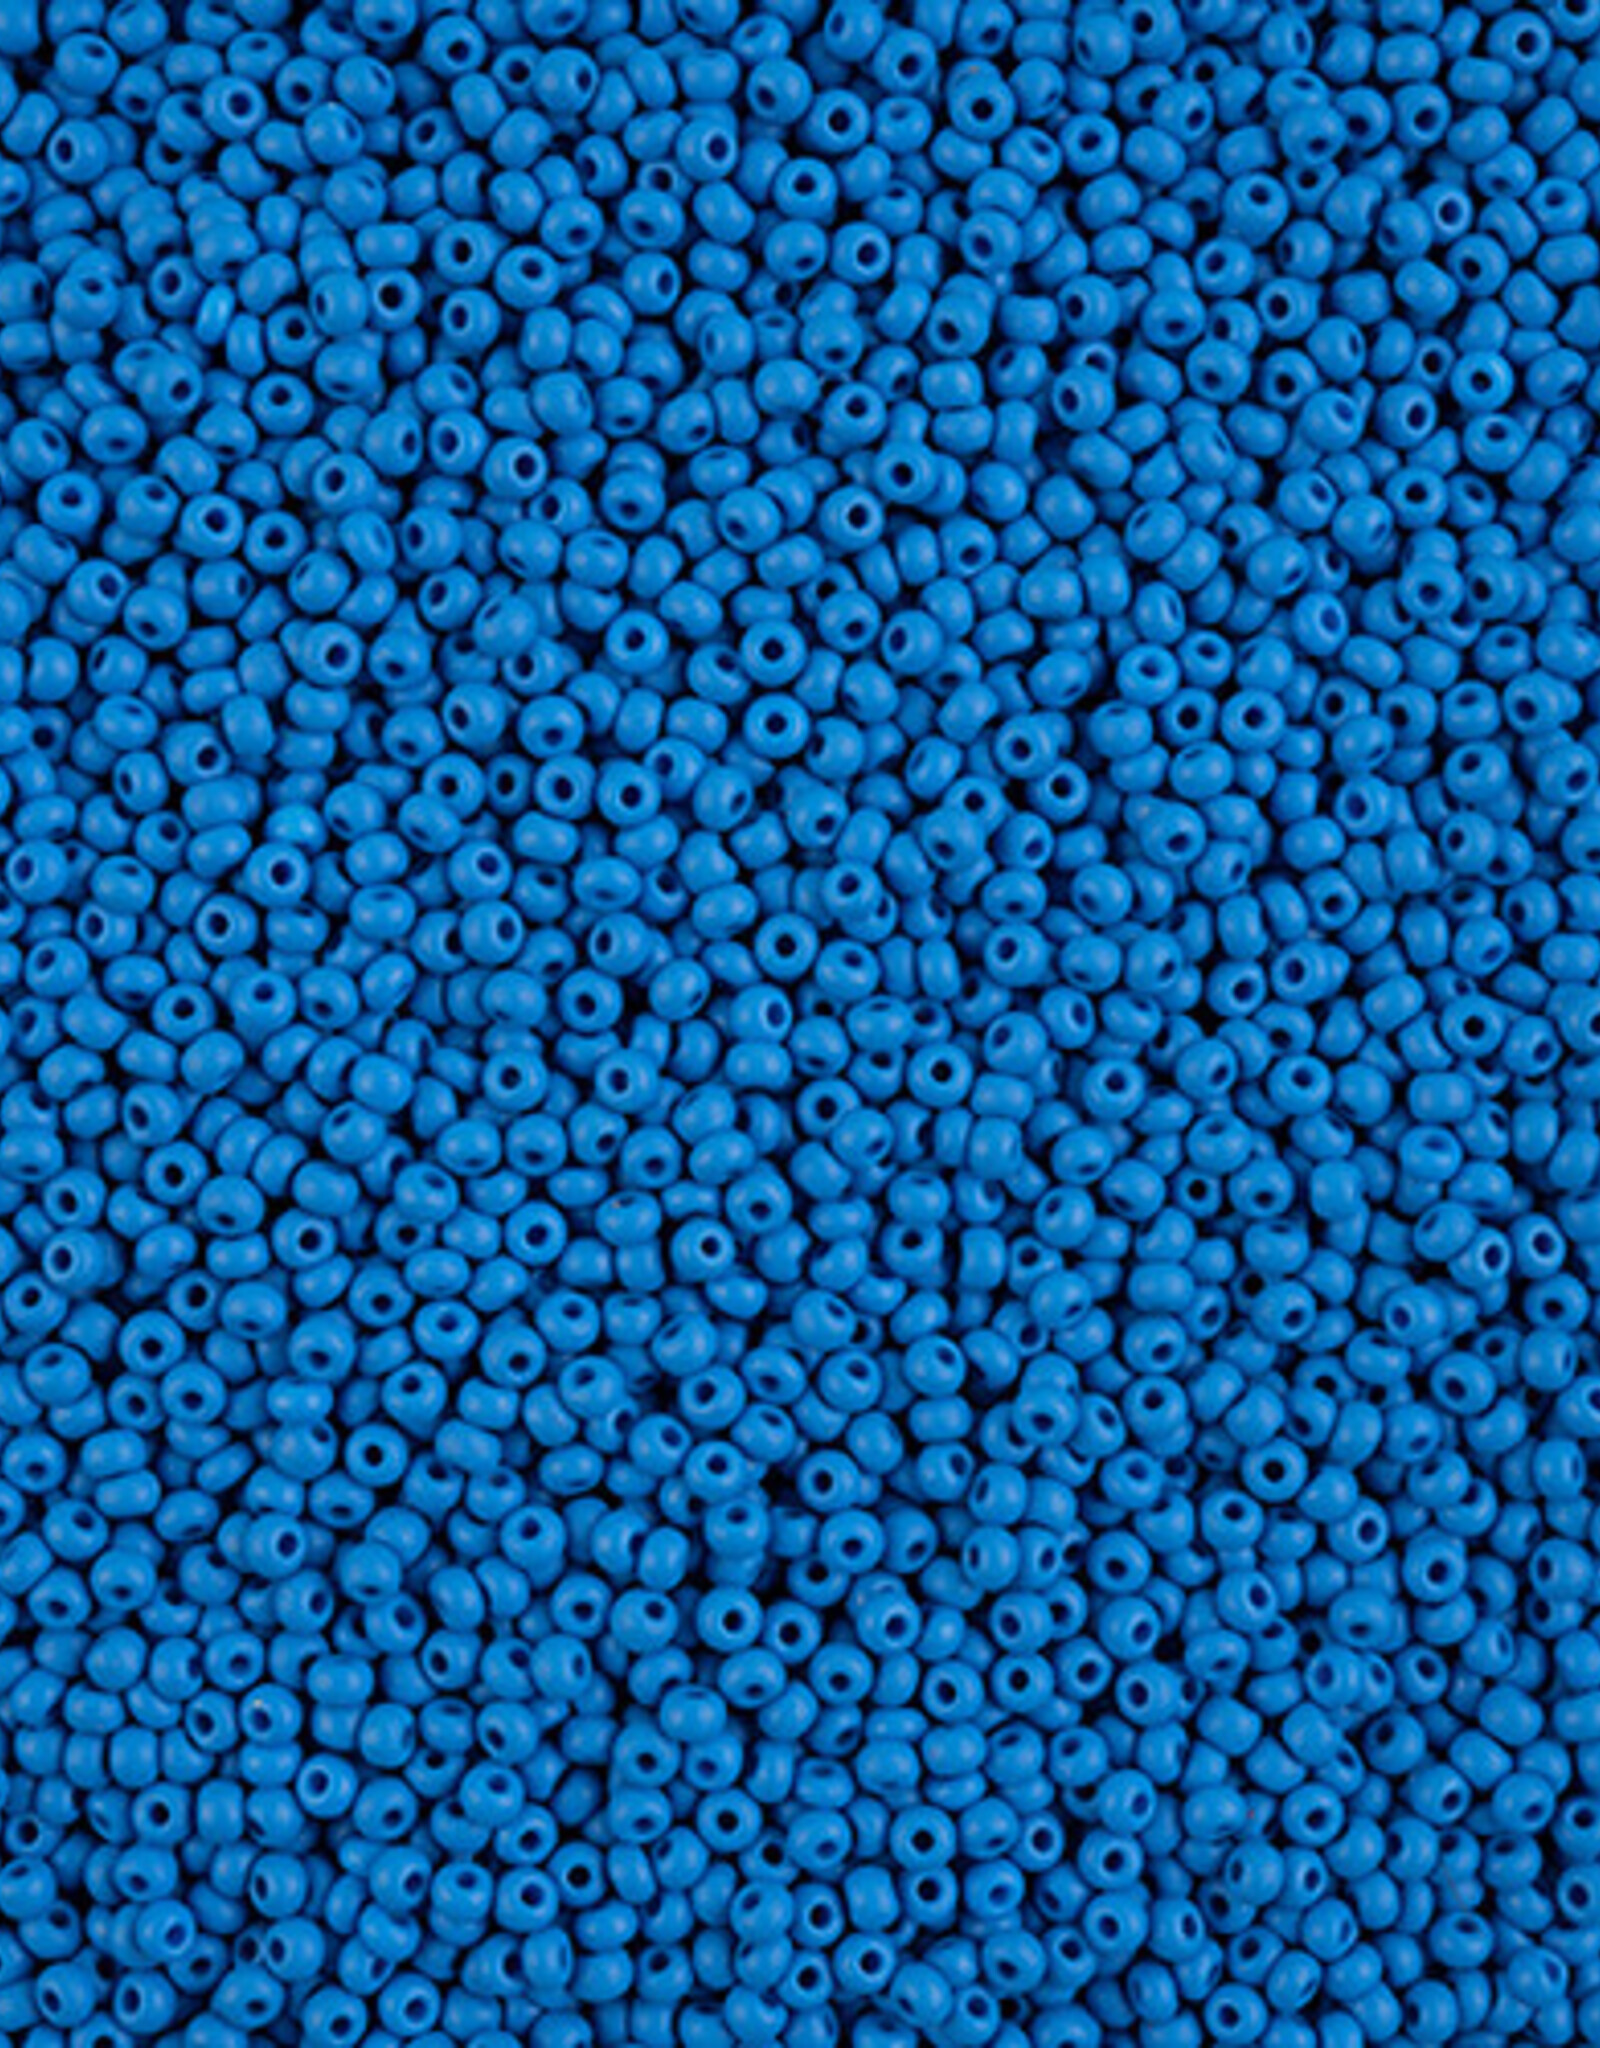 Czech Seed Bead 11/0 Vial PermaLux Dyed Chalk Blue Matt apx24g